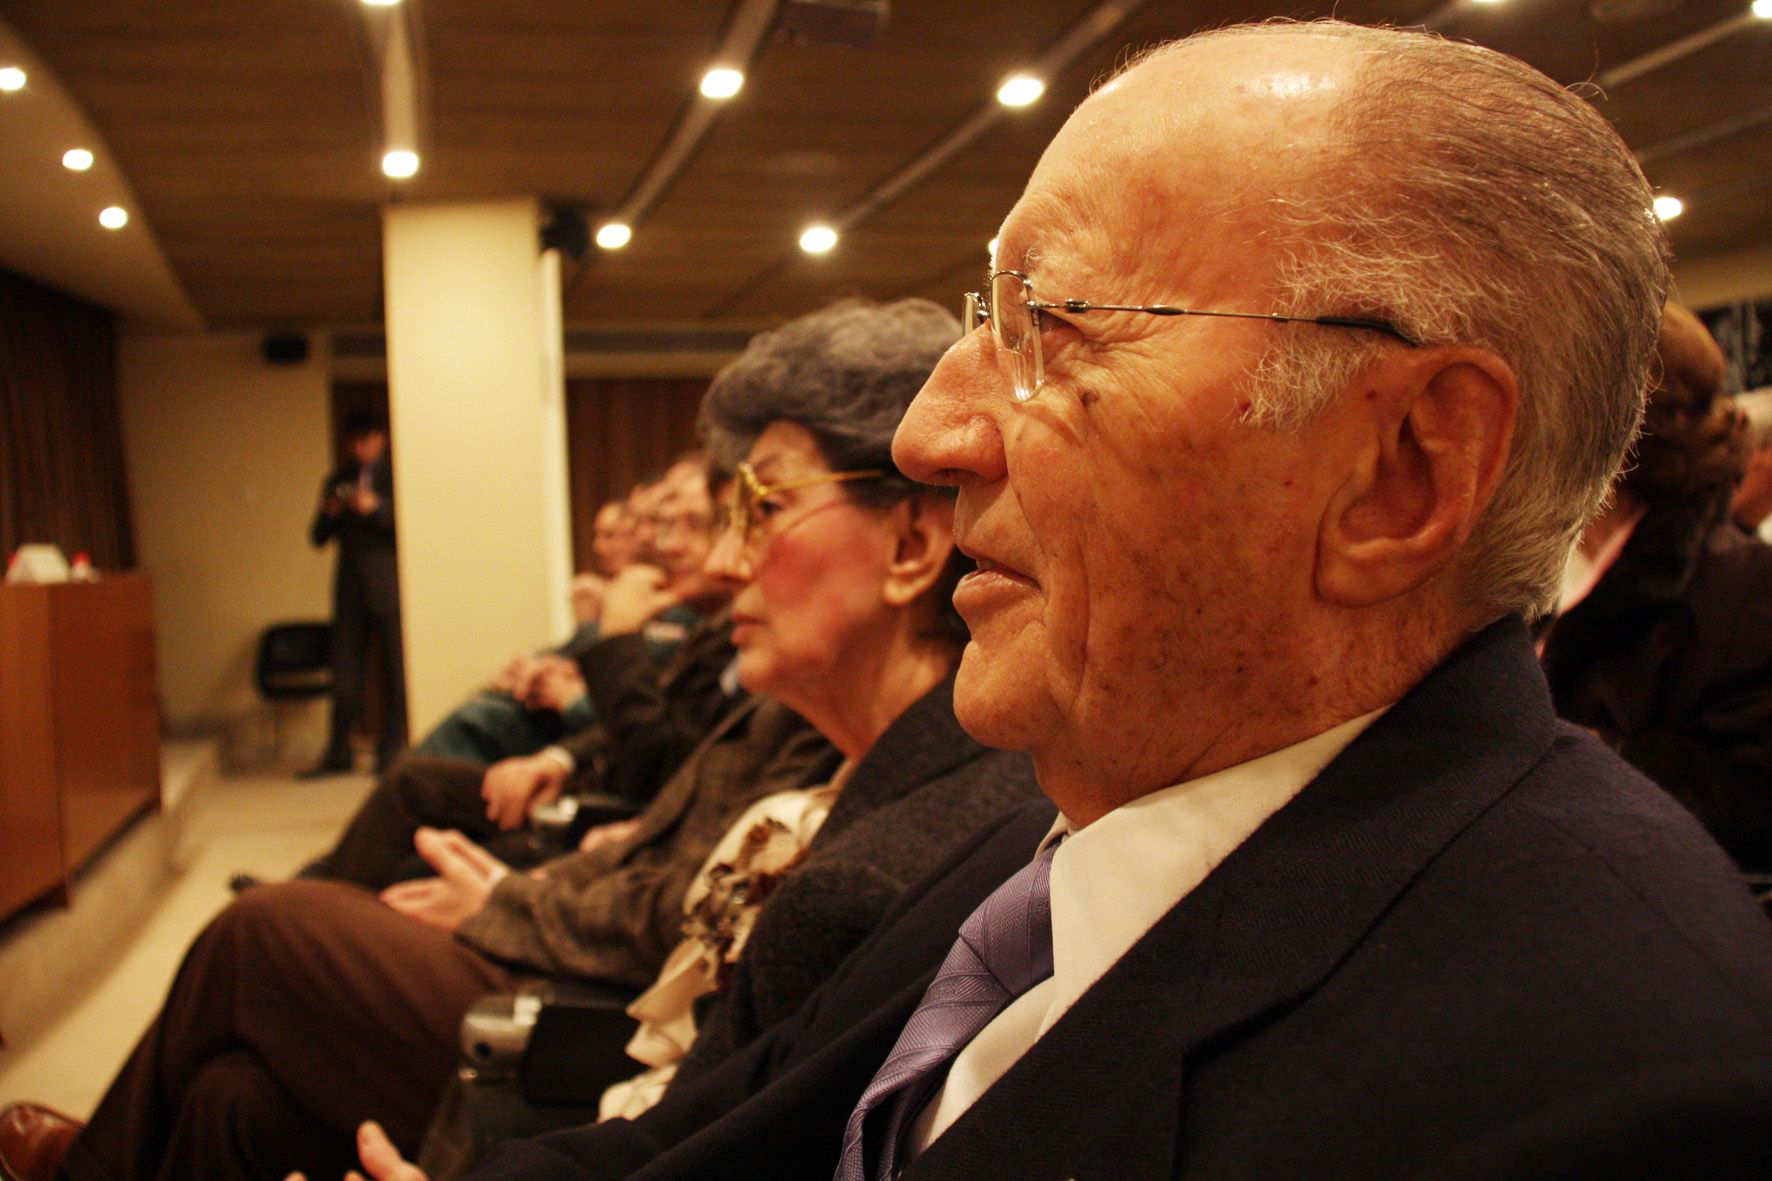 Mor als 89 anys l'oftalmòleg Joaquim Barraquer